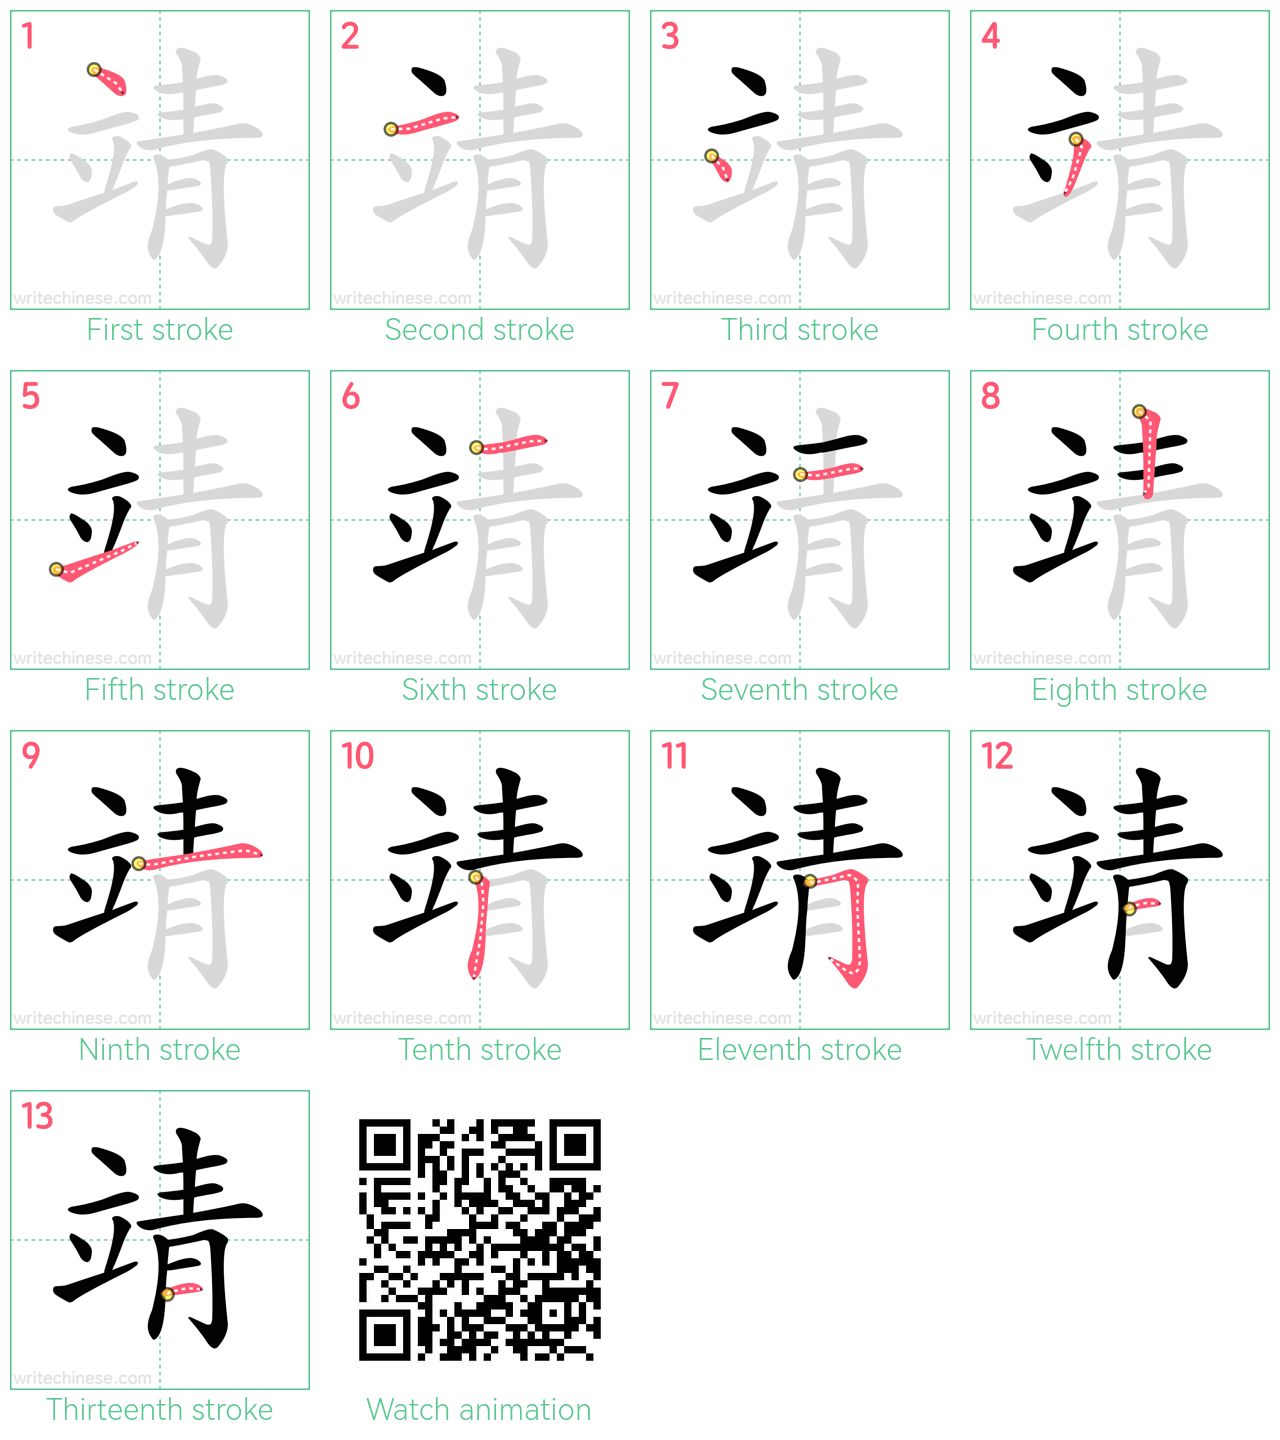 靖 step-by-step stroke order diagrams